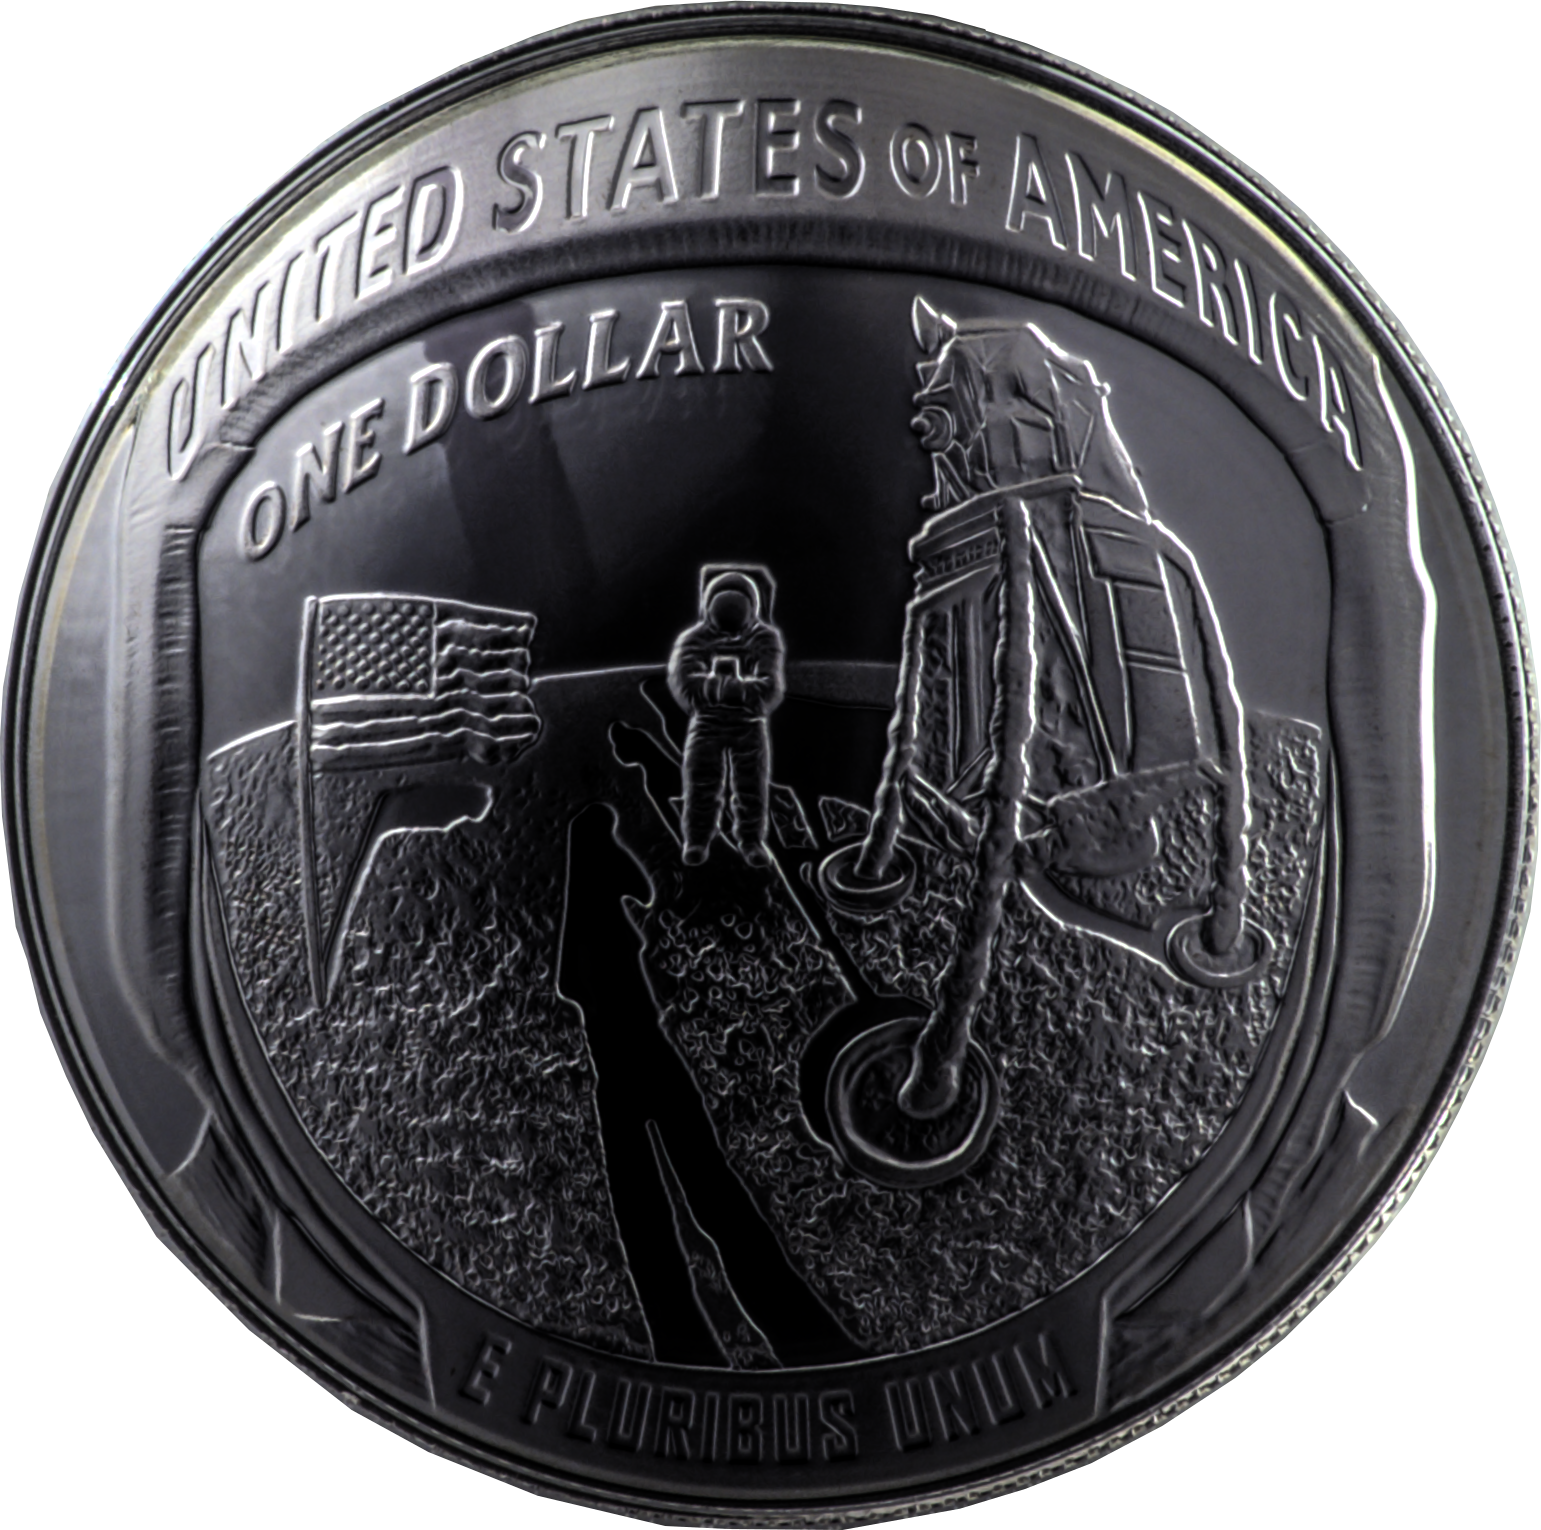 Souvenir Lot de 2 pièces de Monnaie commémoratives 2019 Apollo 11 50e Anniversaire avec Bordure dorée idée Cadeau NASA Humans atterrissant Collection de Bijoux première Empreinte de la Lune 